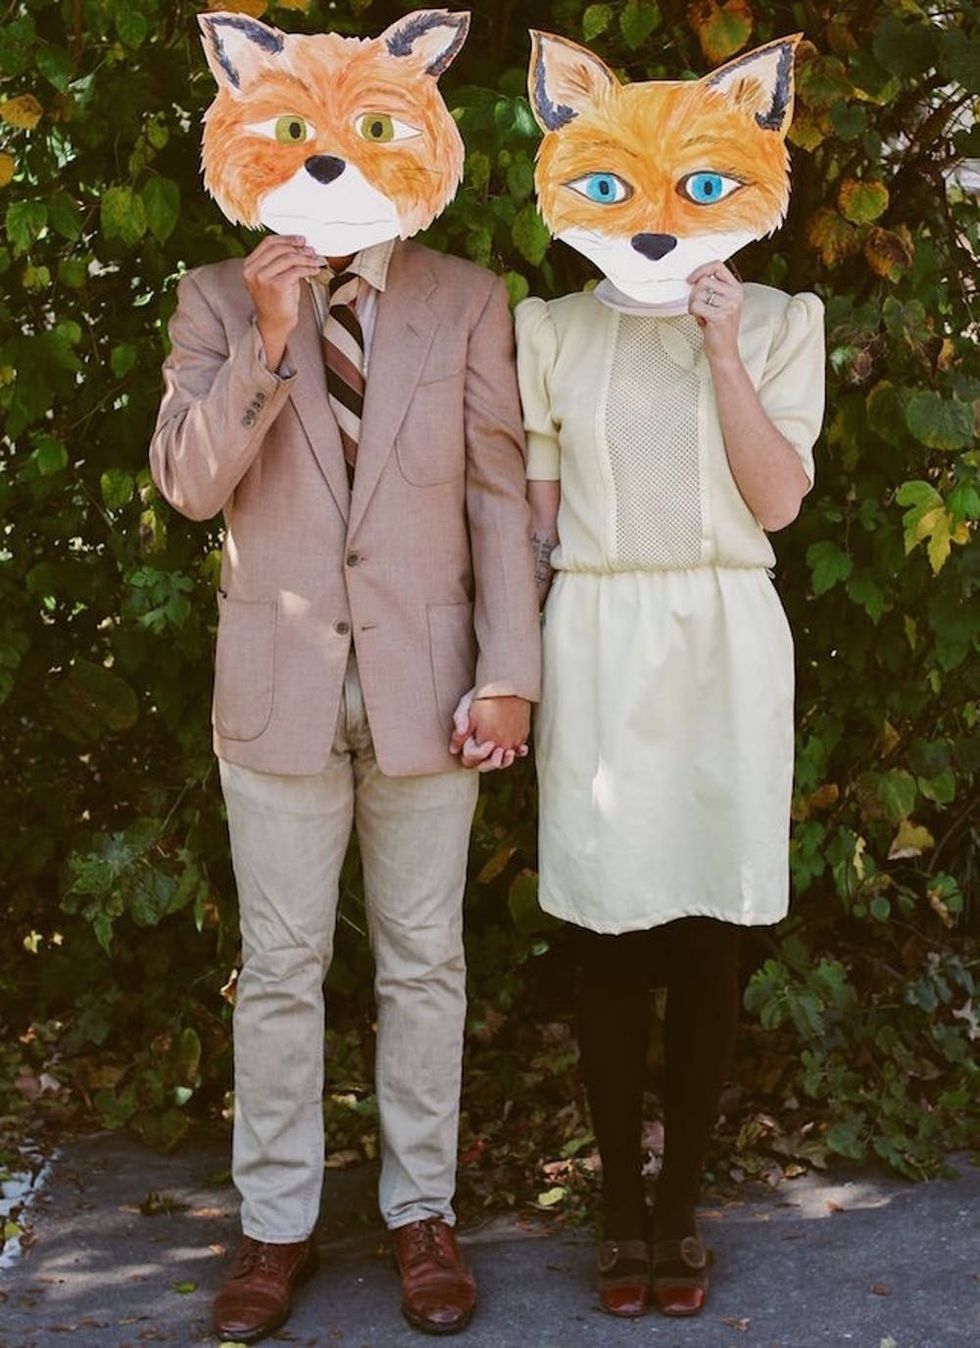 Mr. and Mrs. Fox Costume last-minute Halloween costume